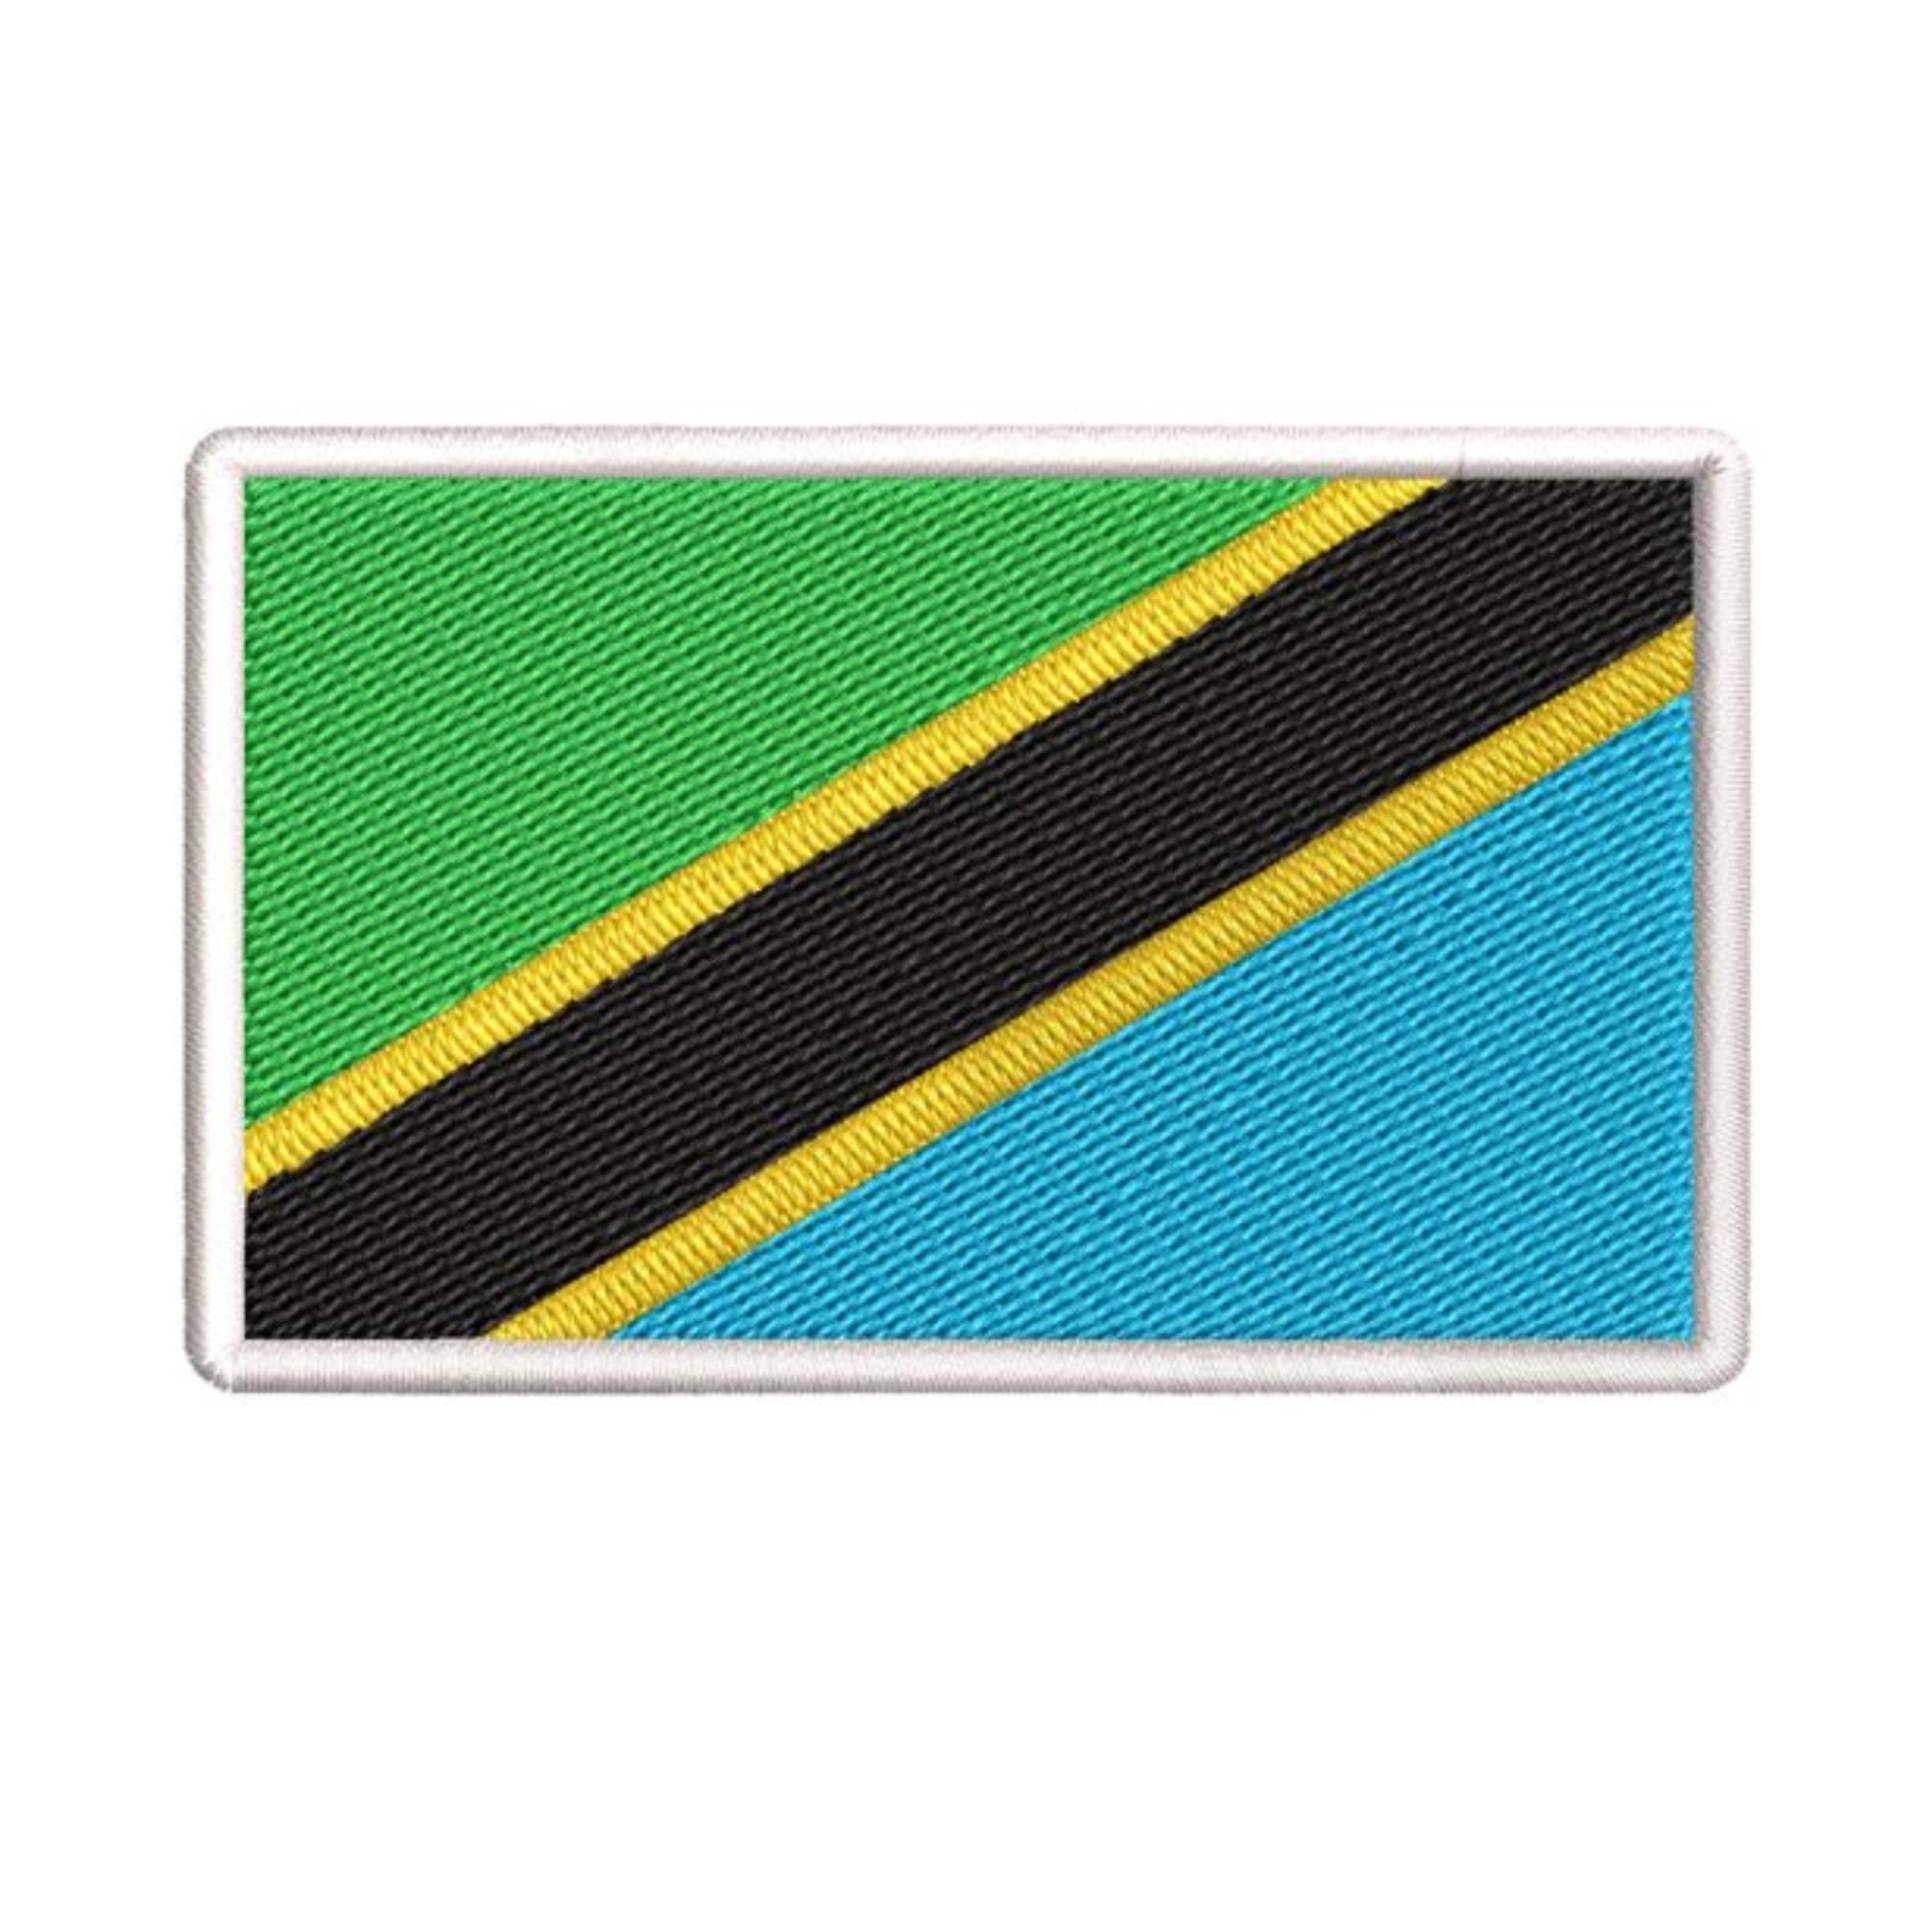 Tansania Flagge Patch Bestickt Bügelbild Applikation, Schulter Uniform Weste Jacke, Reisen, Biker Mc Club Military Veteran Forscher von FamilyAdventuresUS